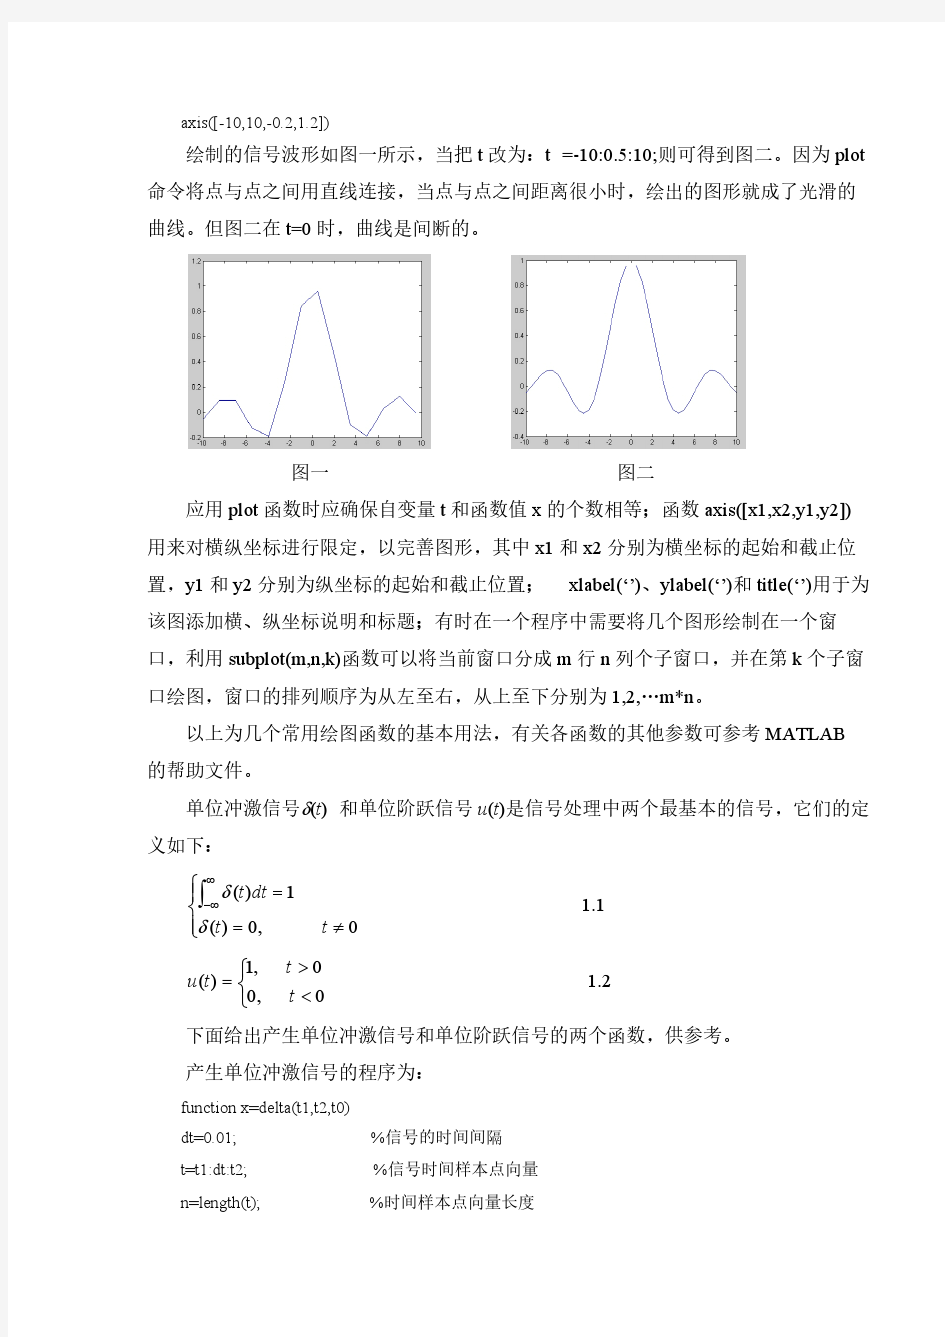 武汉工程大学信号分析与处理实验文档